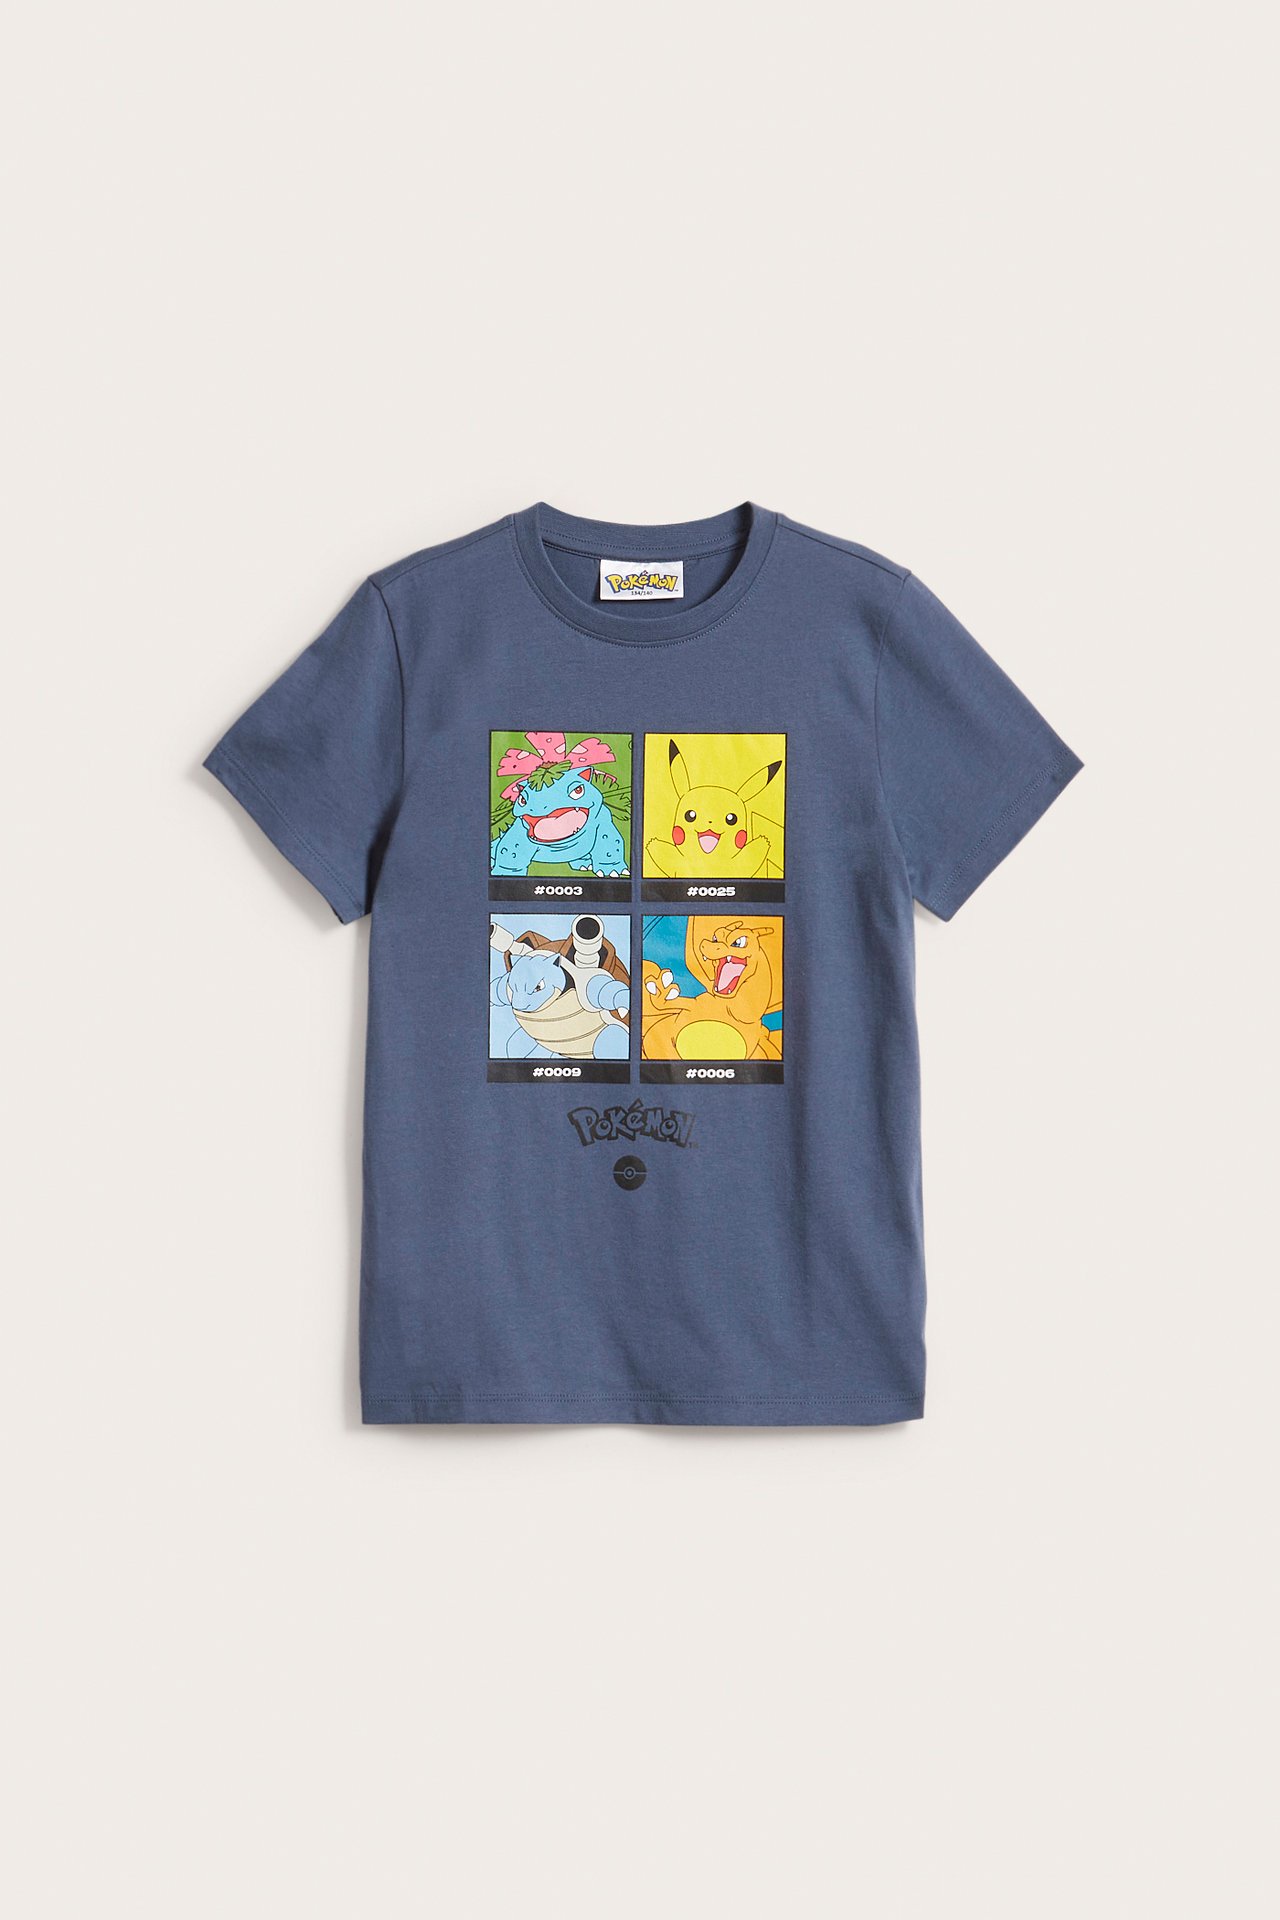 T-shirt Pokémon